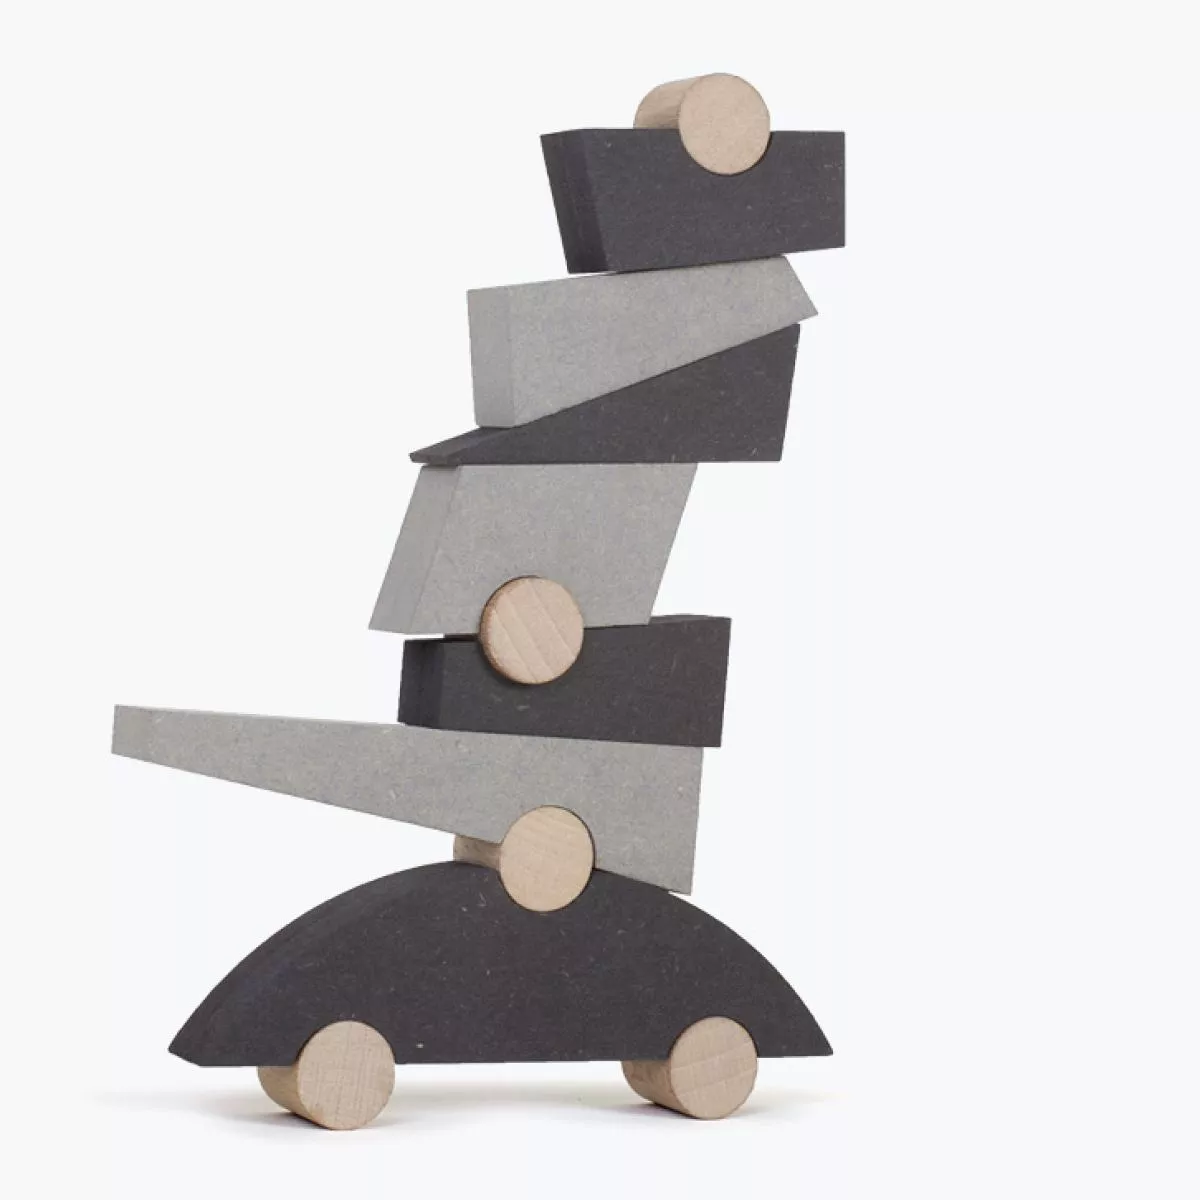 Kunstvolles Balance-Spiel aus zweifarbigen Holzklötzen